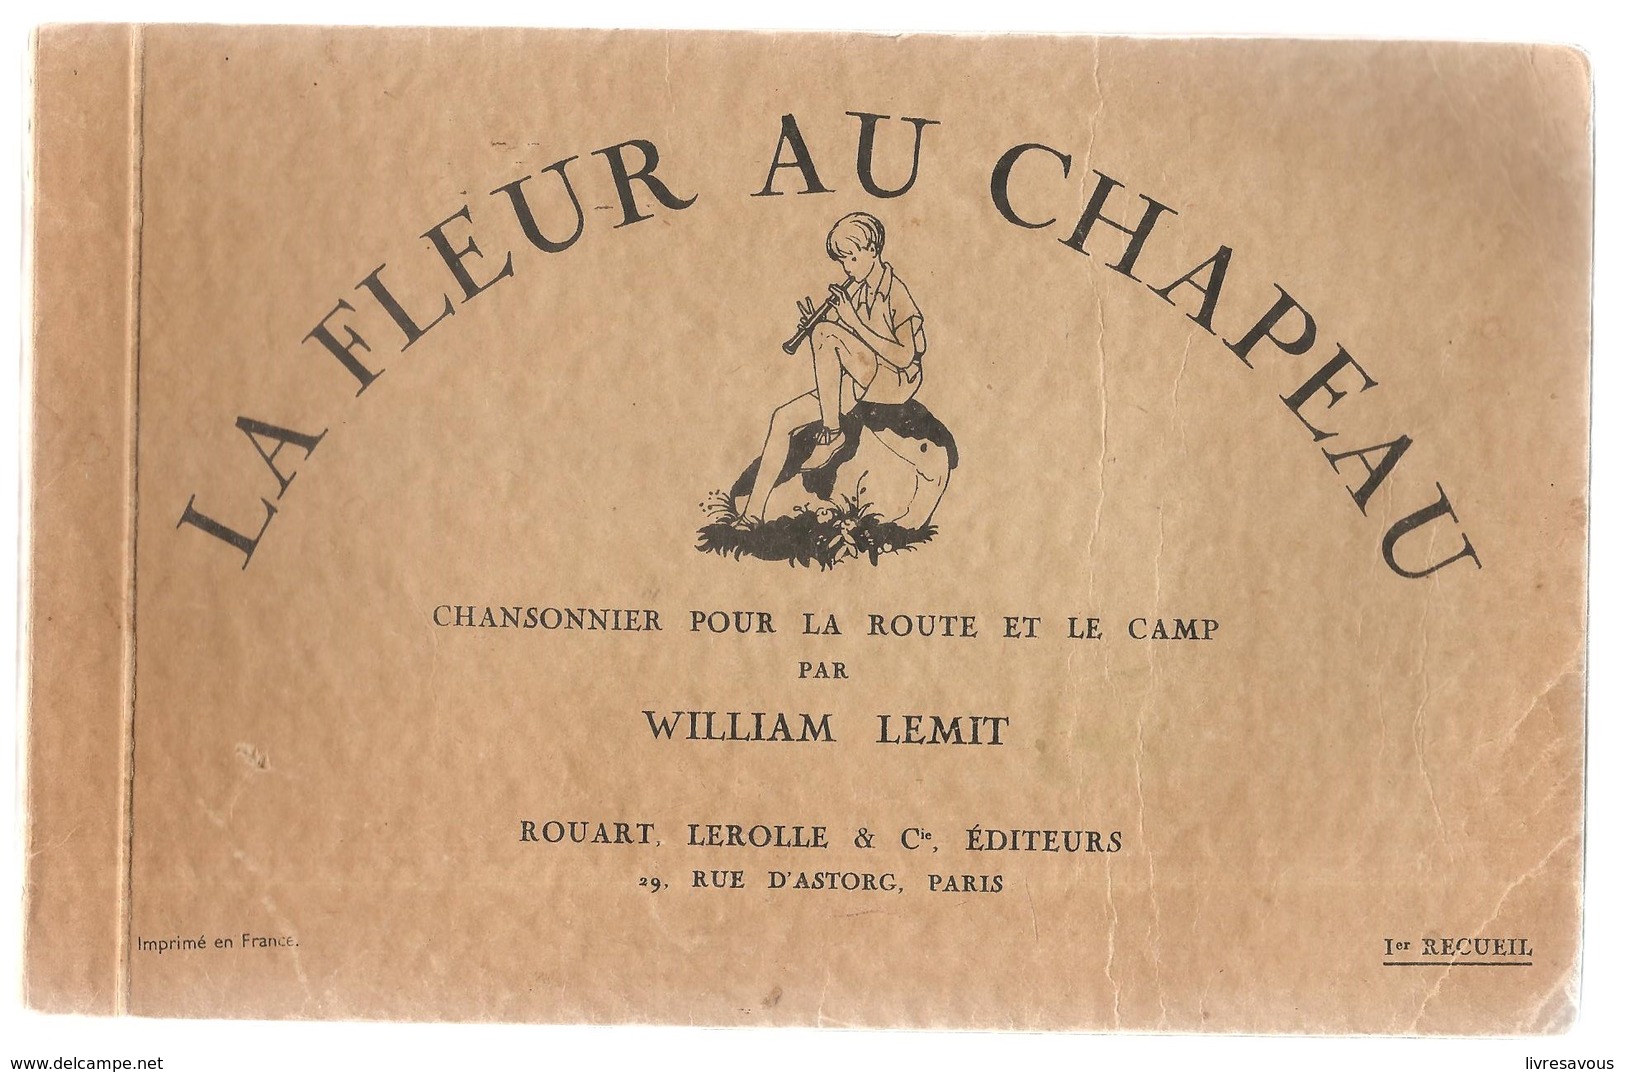 Scoutisme La Fleur Au Chapeau Chansonnier Pour La Route Et Le Camp Par William Lemit, Illustré Par Pierre Joubert - Scoutisme